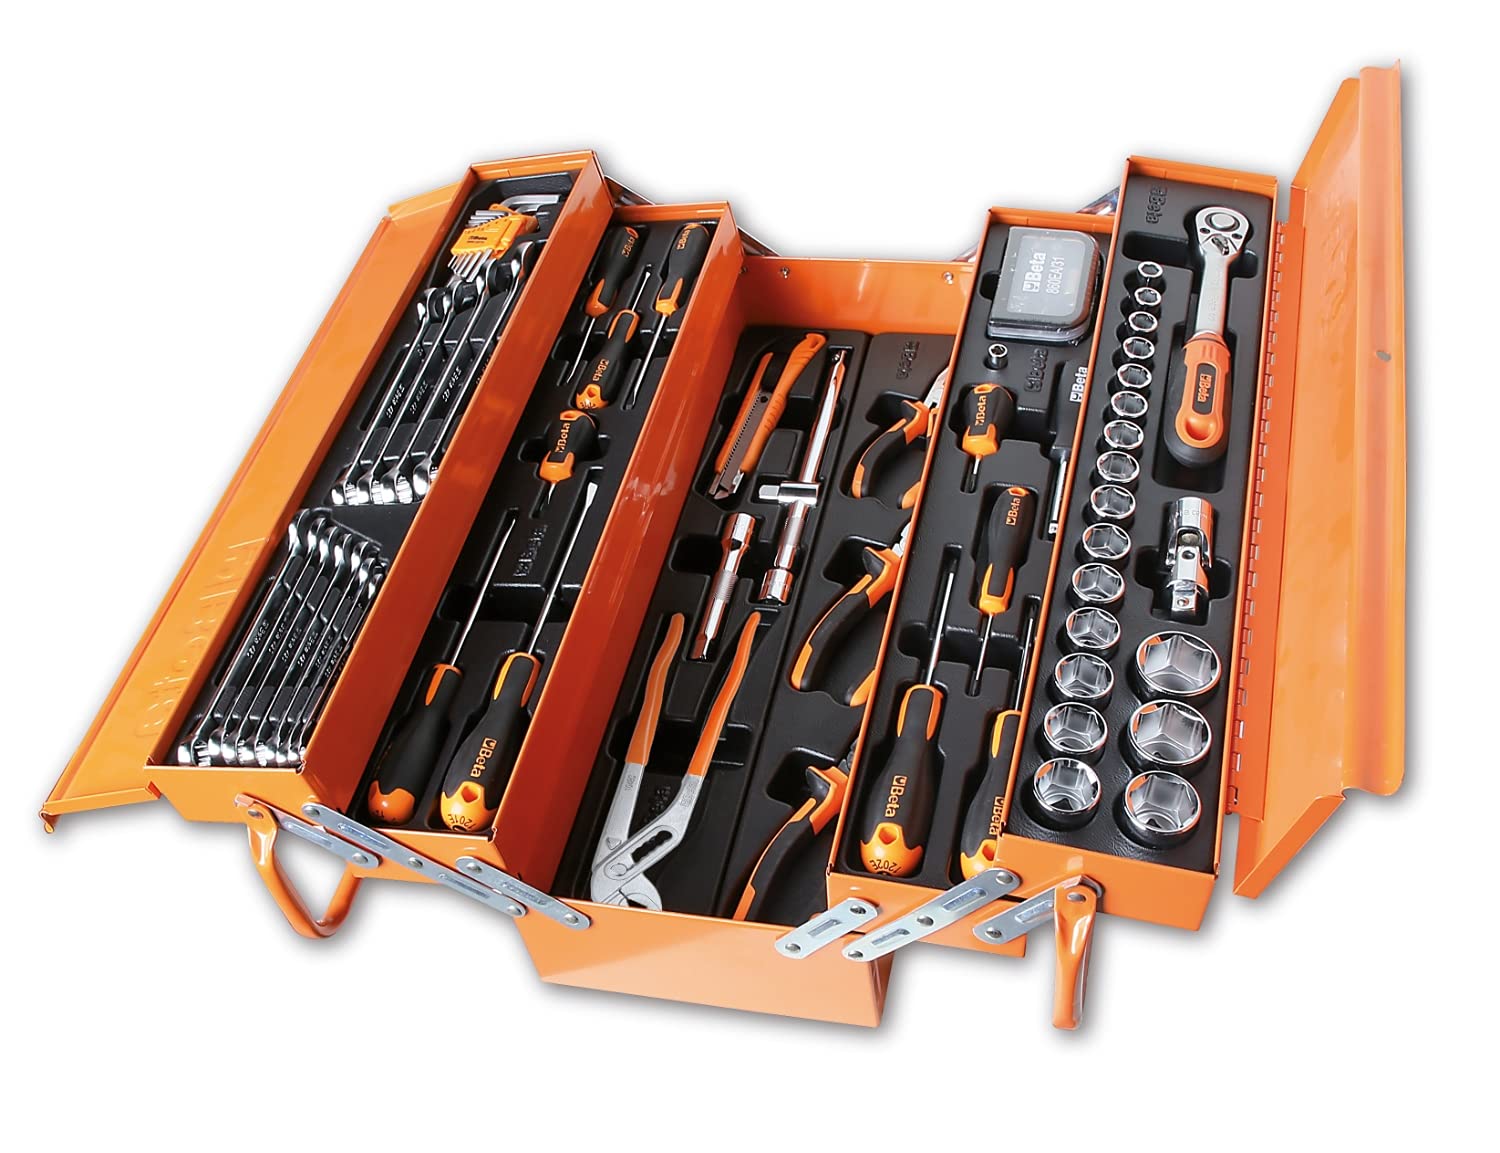 Beta 2120L-E/T91-I Werkzeugkoffer für allgemeine Wartung, Elektriker Werkzeuge (Werkzeugkasten mit 91 Sortimentsätzen, Profi Thermoform-Werkzeuge aus Aluminium, umfangreiches Werkstattzubehör), Orange